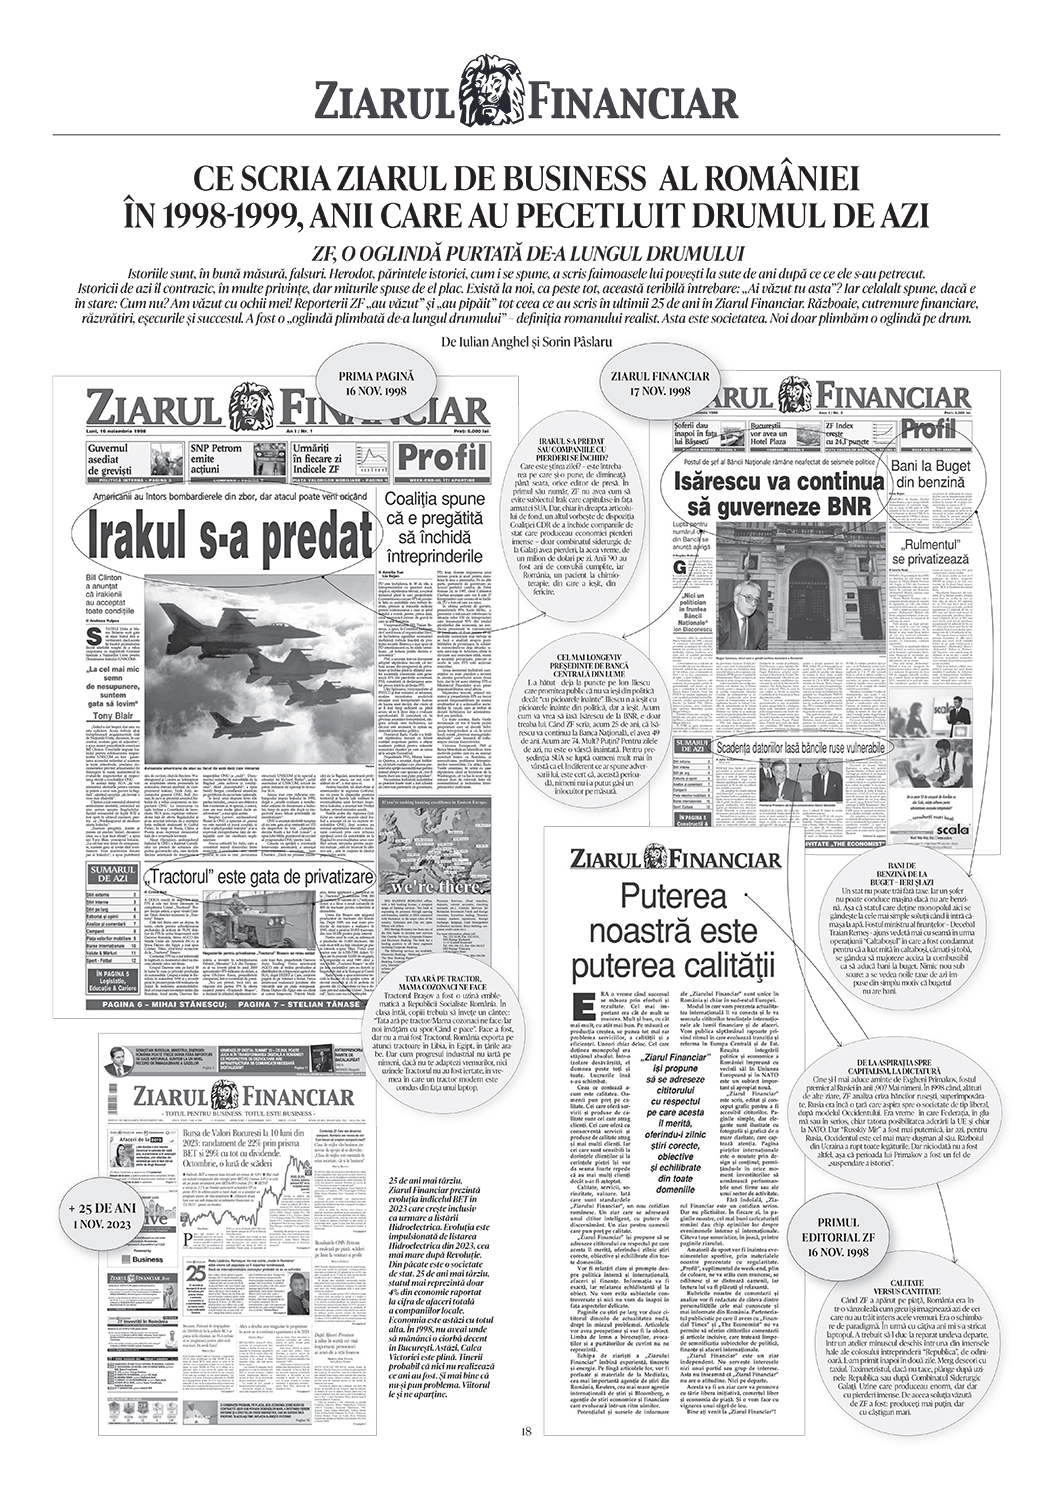 Ce scria ziarul de business al României în 1998-1999, anii care au pecetluit drumul de azi